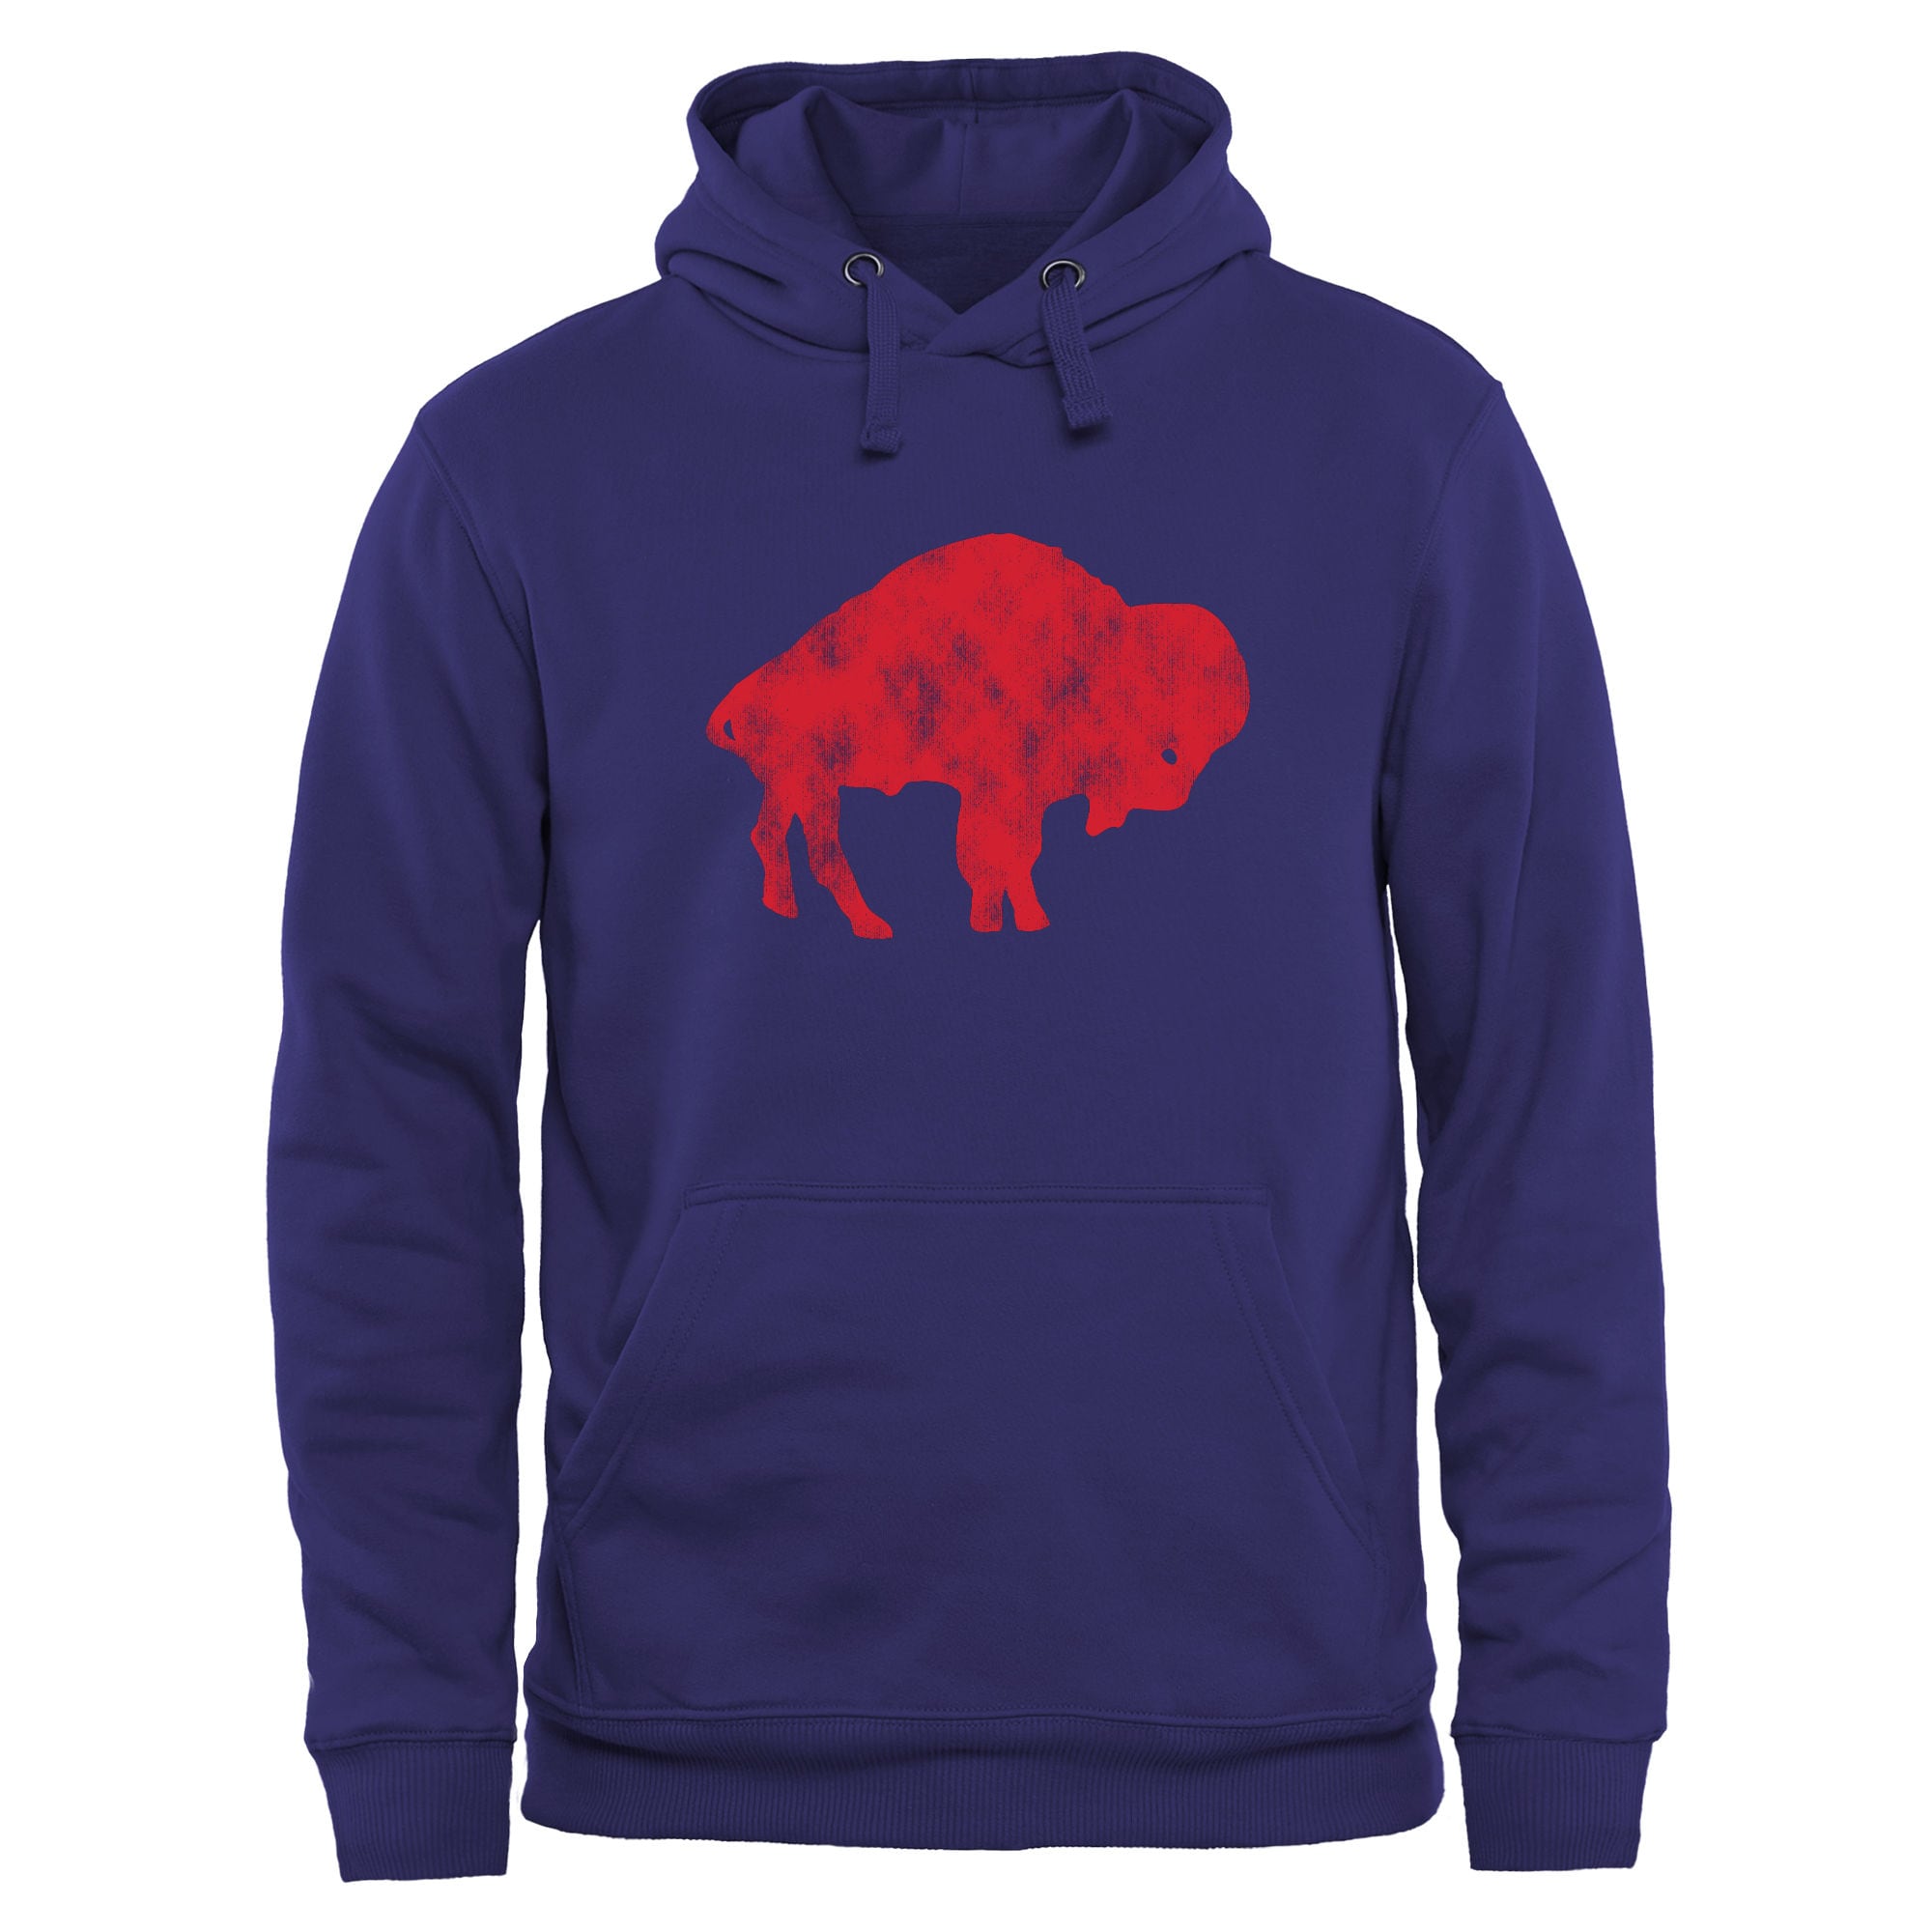 buffalo bills hooded sweatshirt